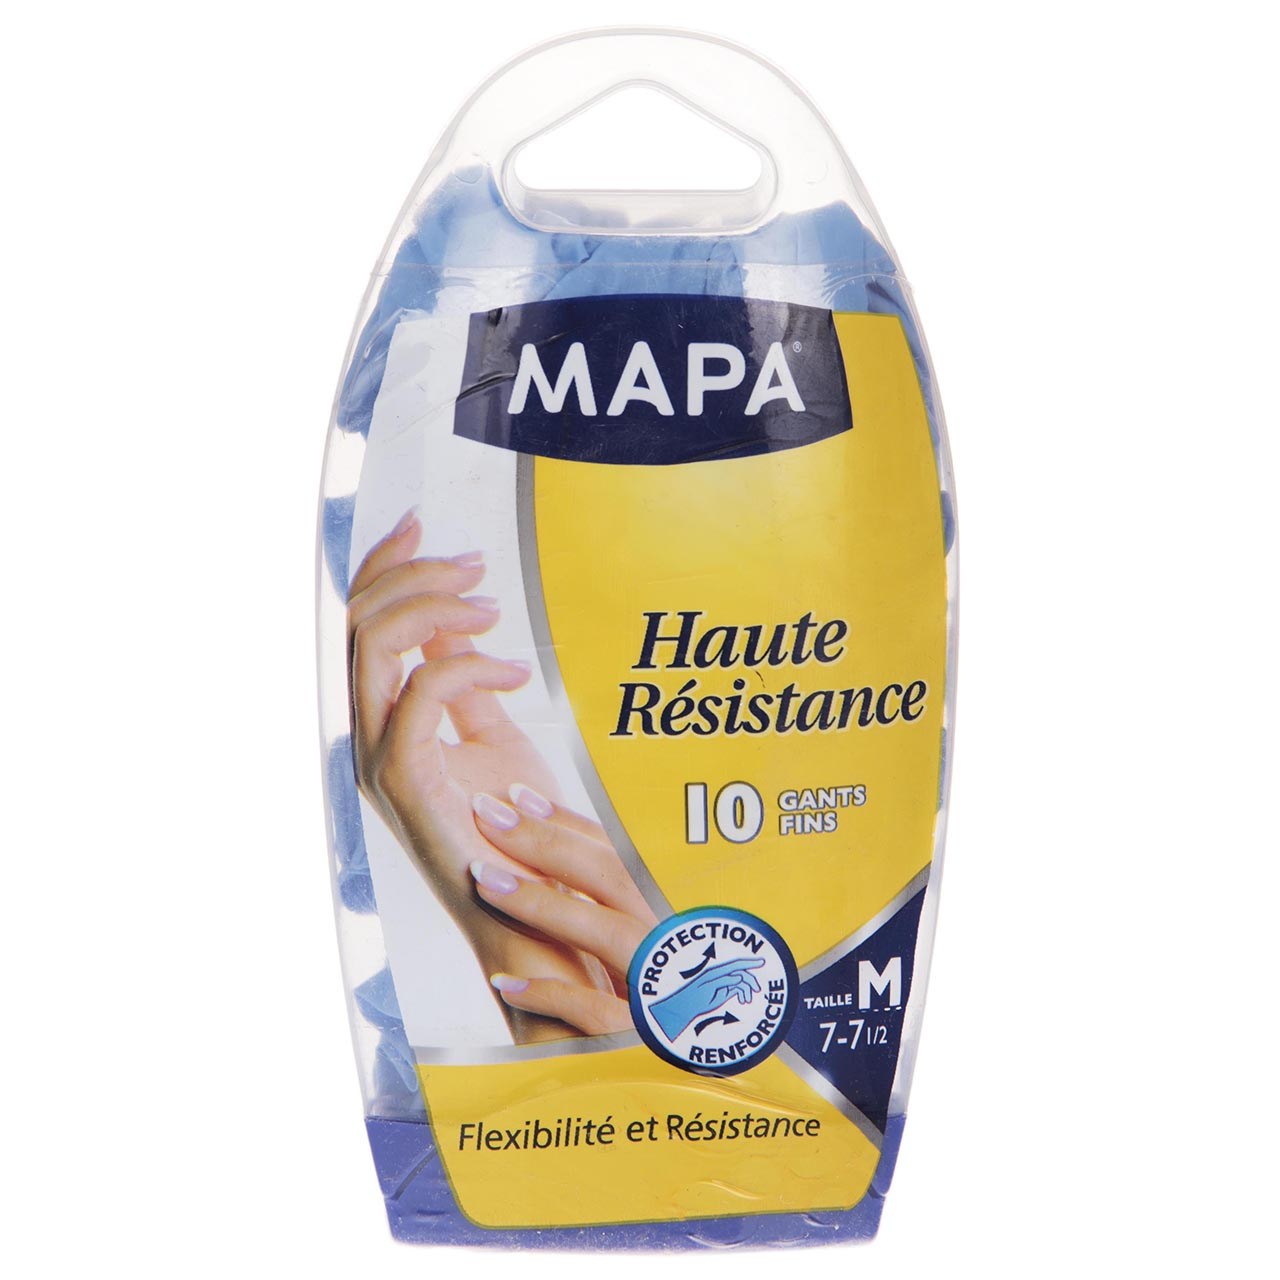 دستکش یکبار مصرف ماپا مدل Haute - سایز متوسط